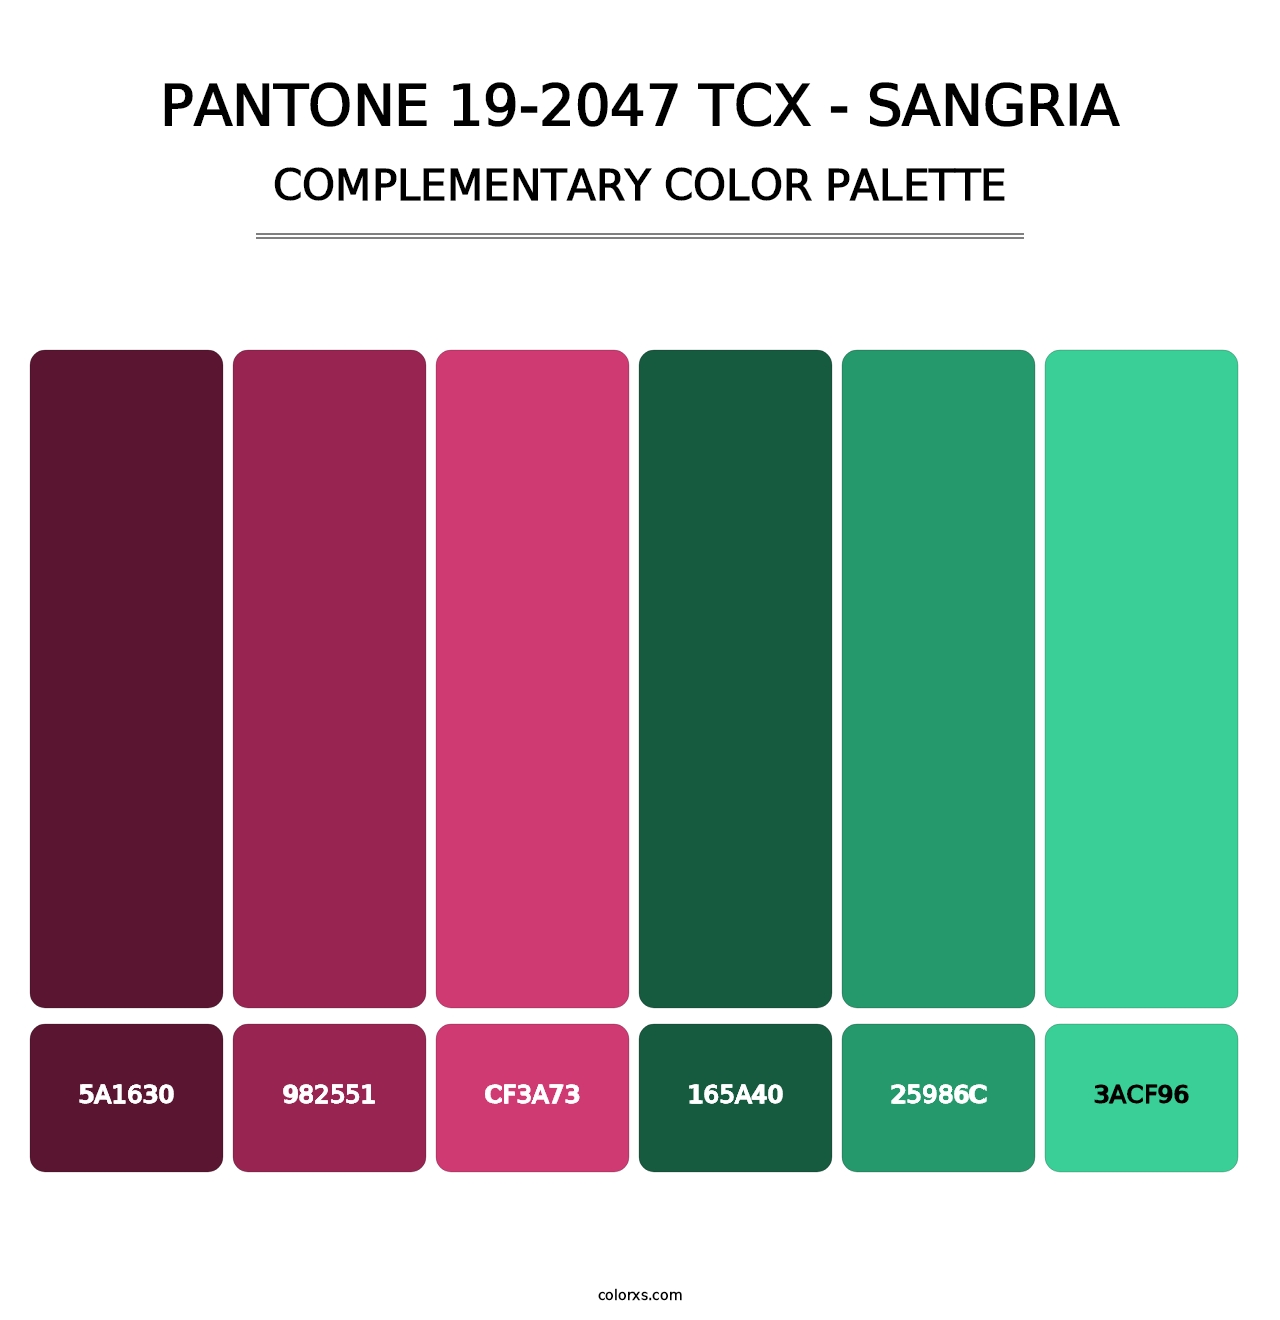 PANTONE 19-2047 TCX - Sangria - Complementary Color Palette